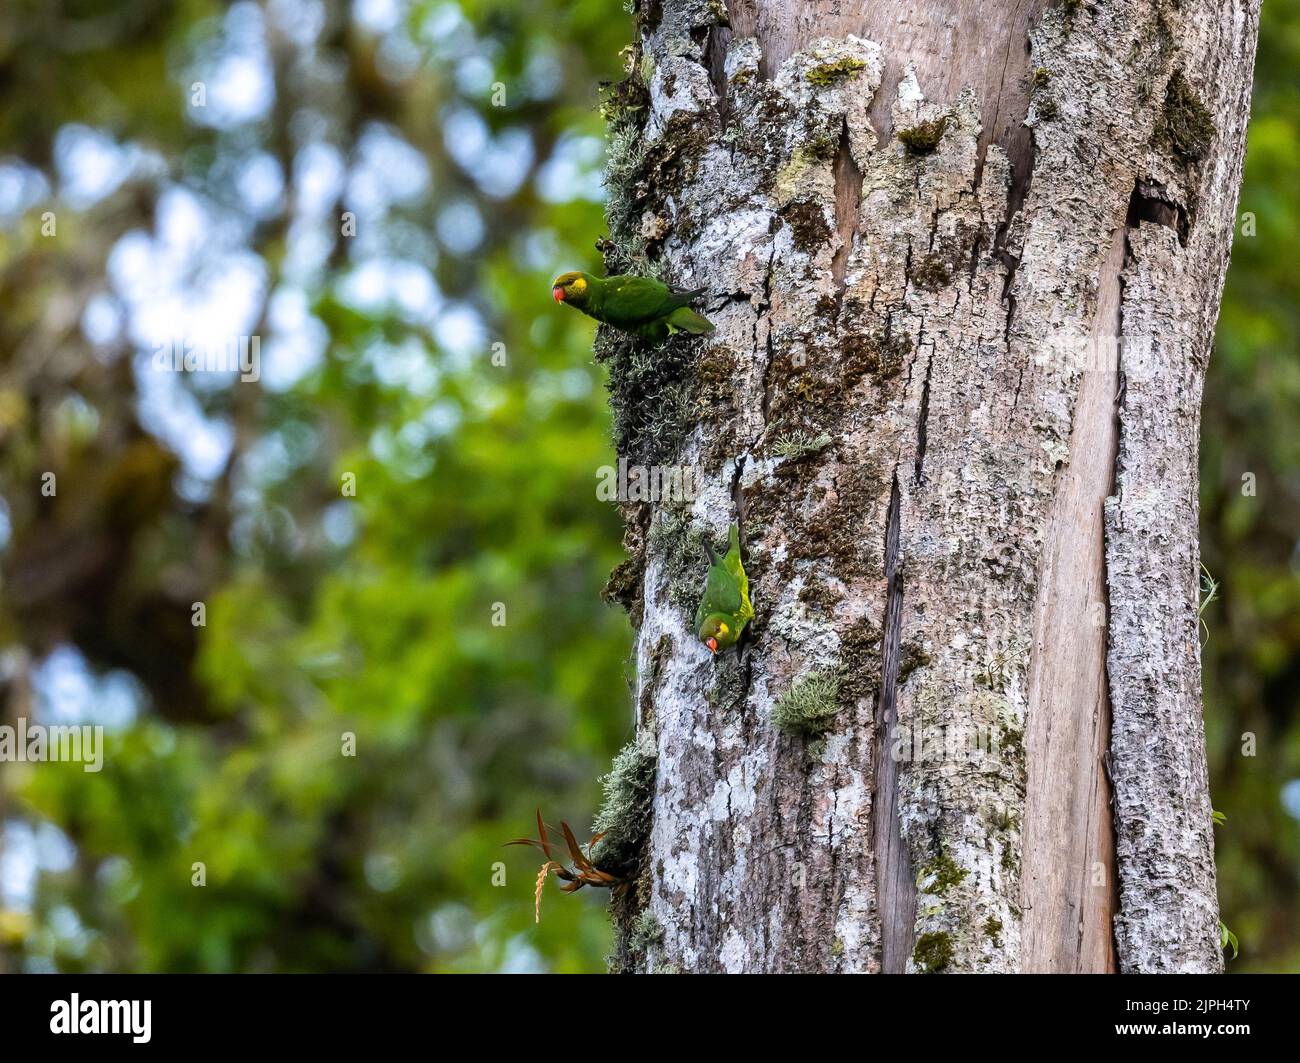 Une paire de Lorikeets à joues jaunes (Saudareos meyeri) en quête sur un tronc d'arbre. Lore Lindu National Park, Sulawesi, Indonésie. Banque D'Images